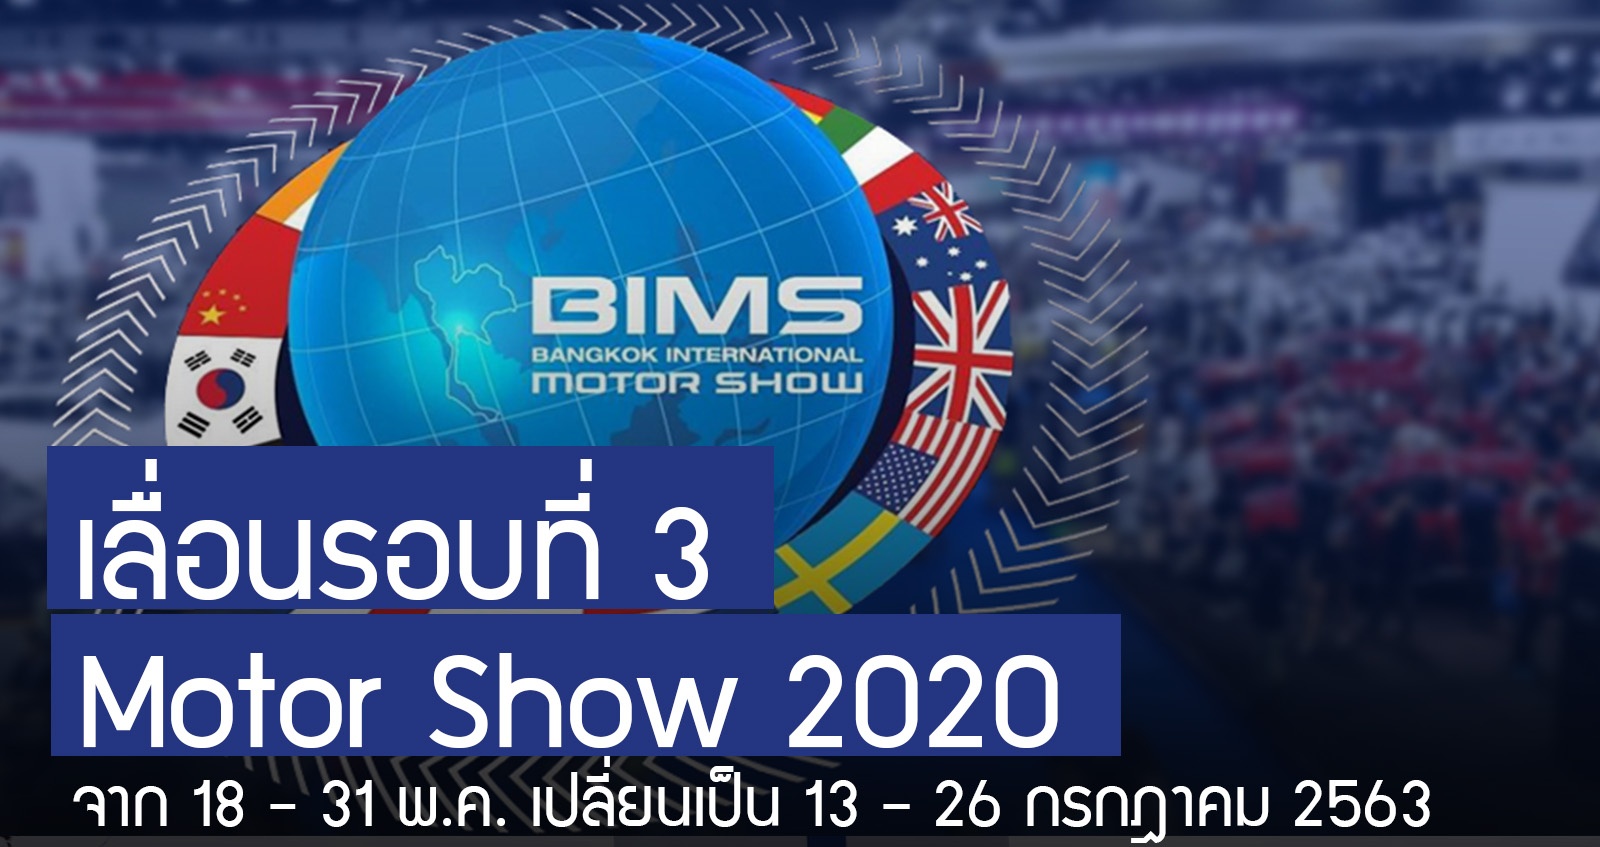 เลื่อน รอบที่ 3 Motor Show 2020 เปลี่ยนเป็น 13 -26 กรกฏาคม